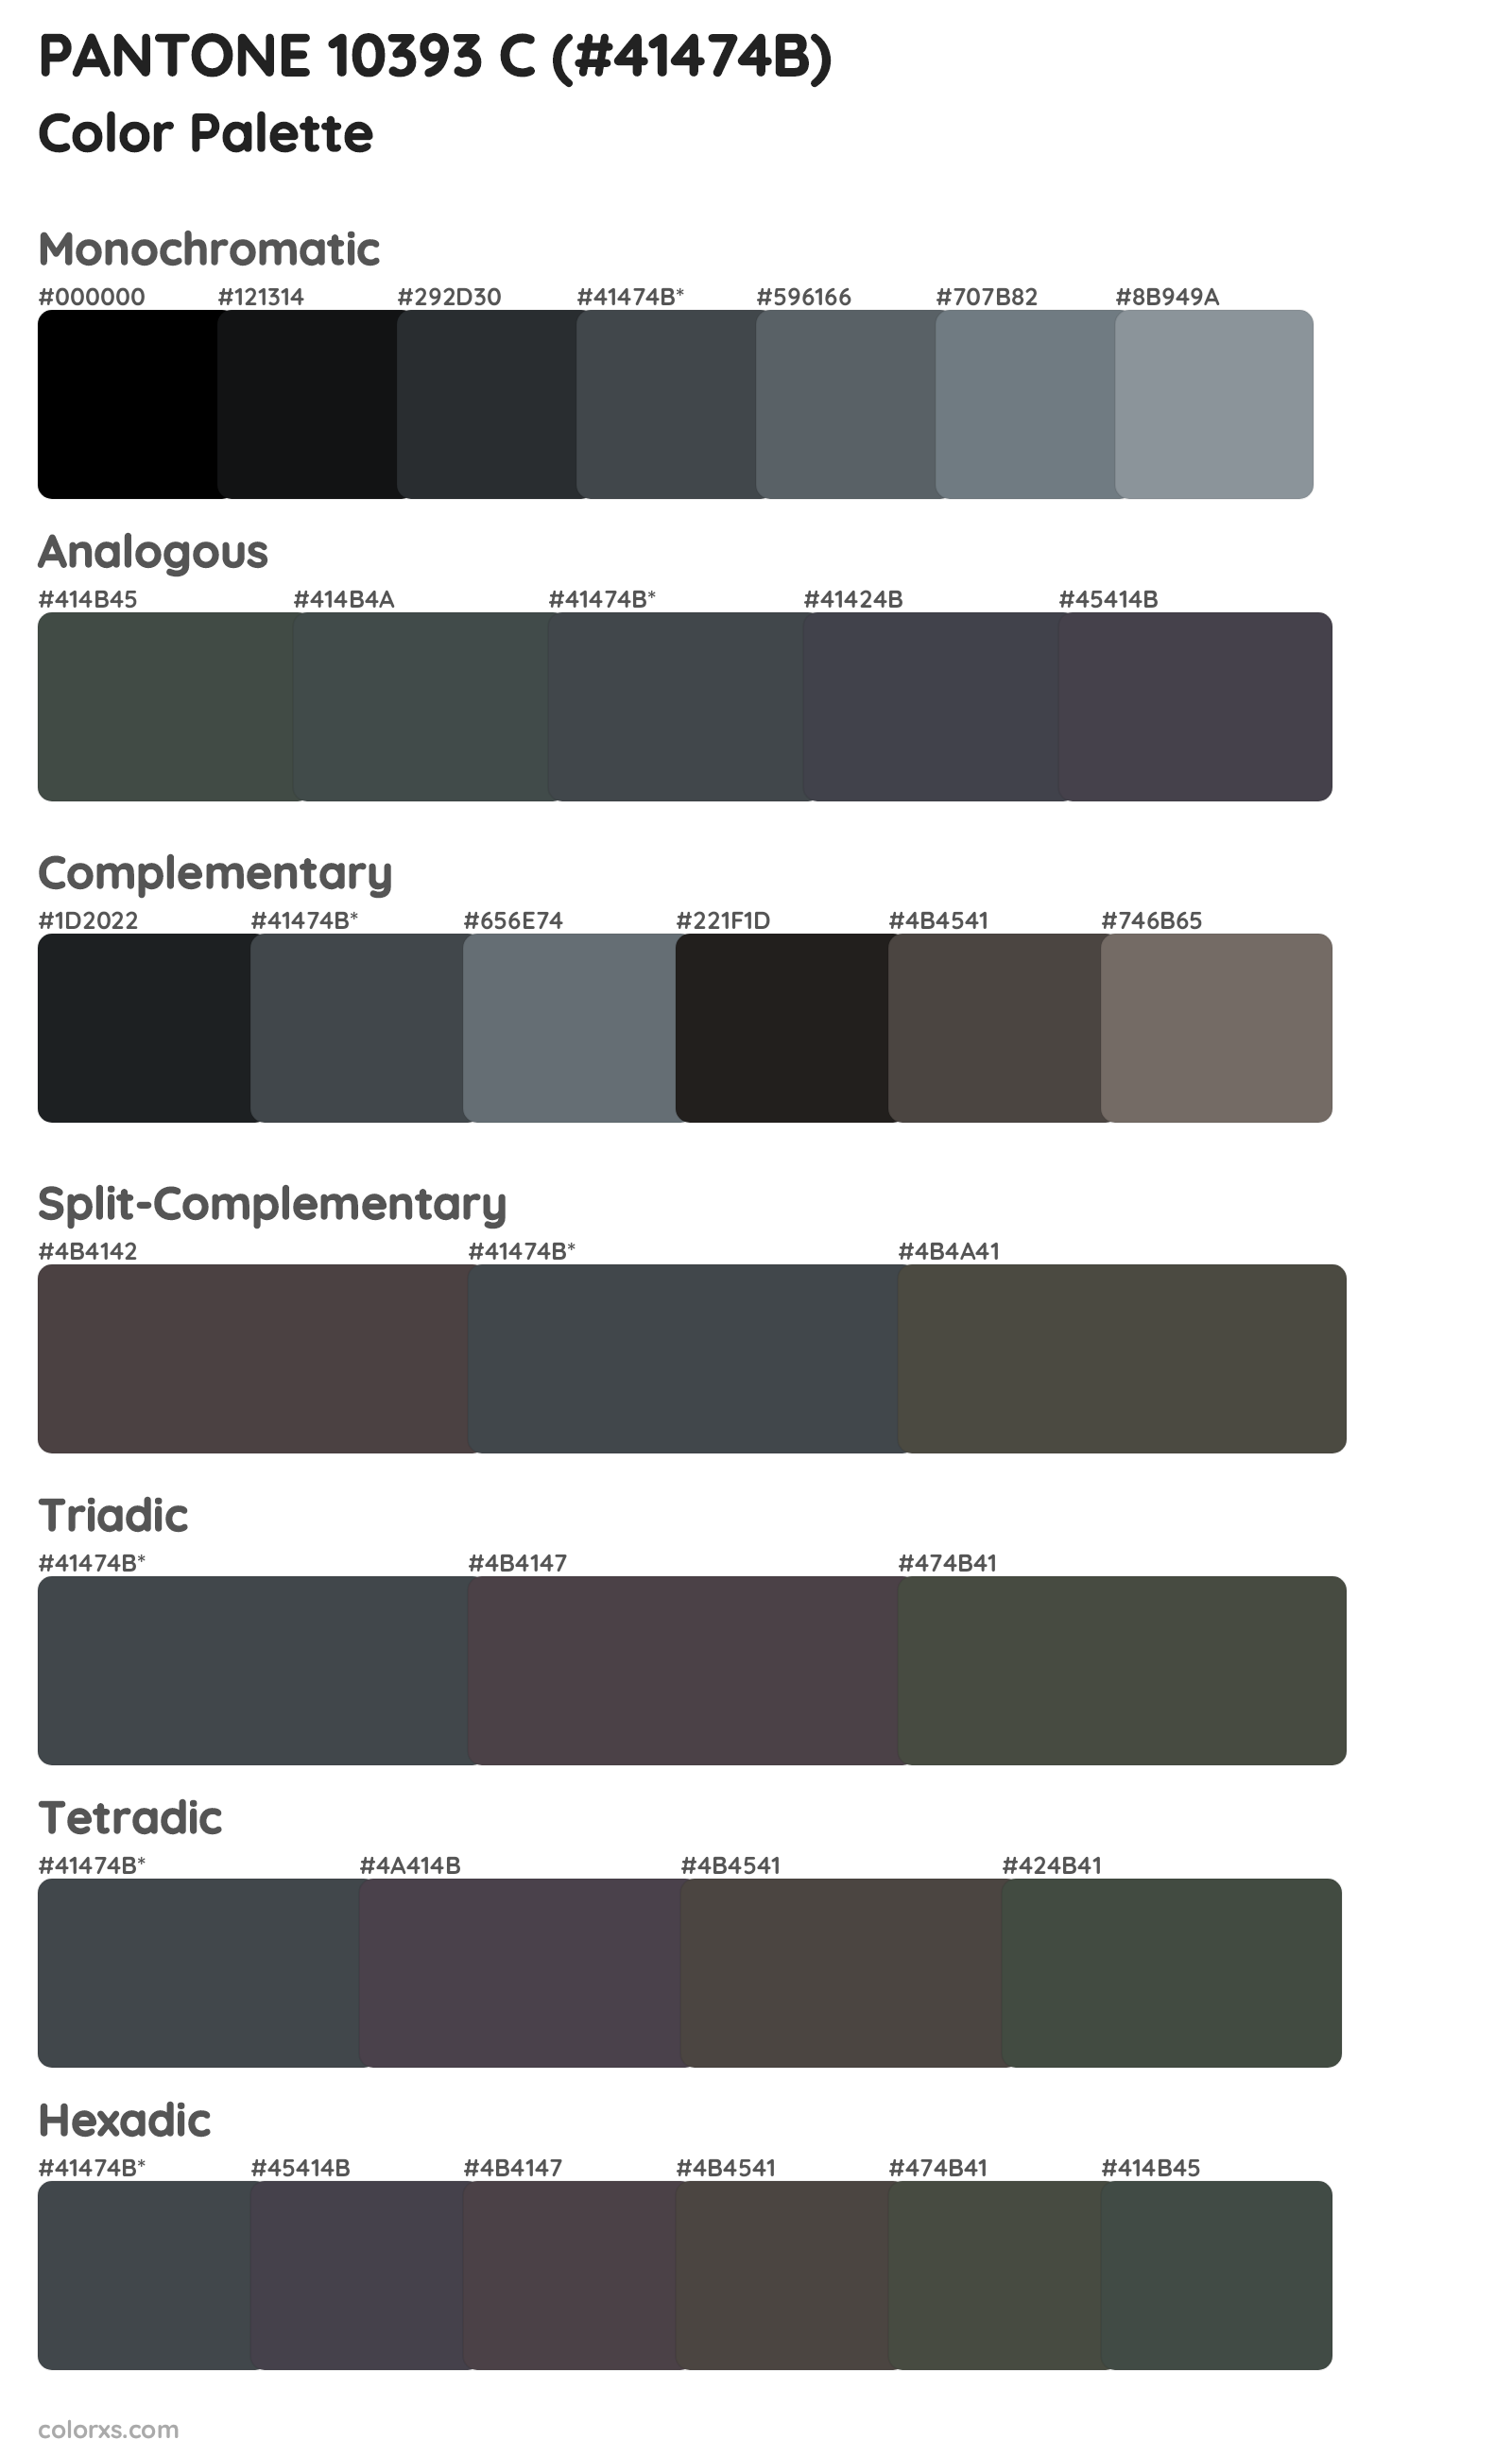 PANTONE 10393 C Color Scheme Palettes